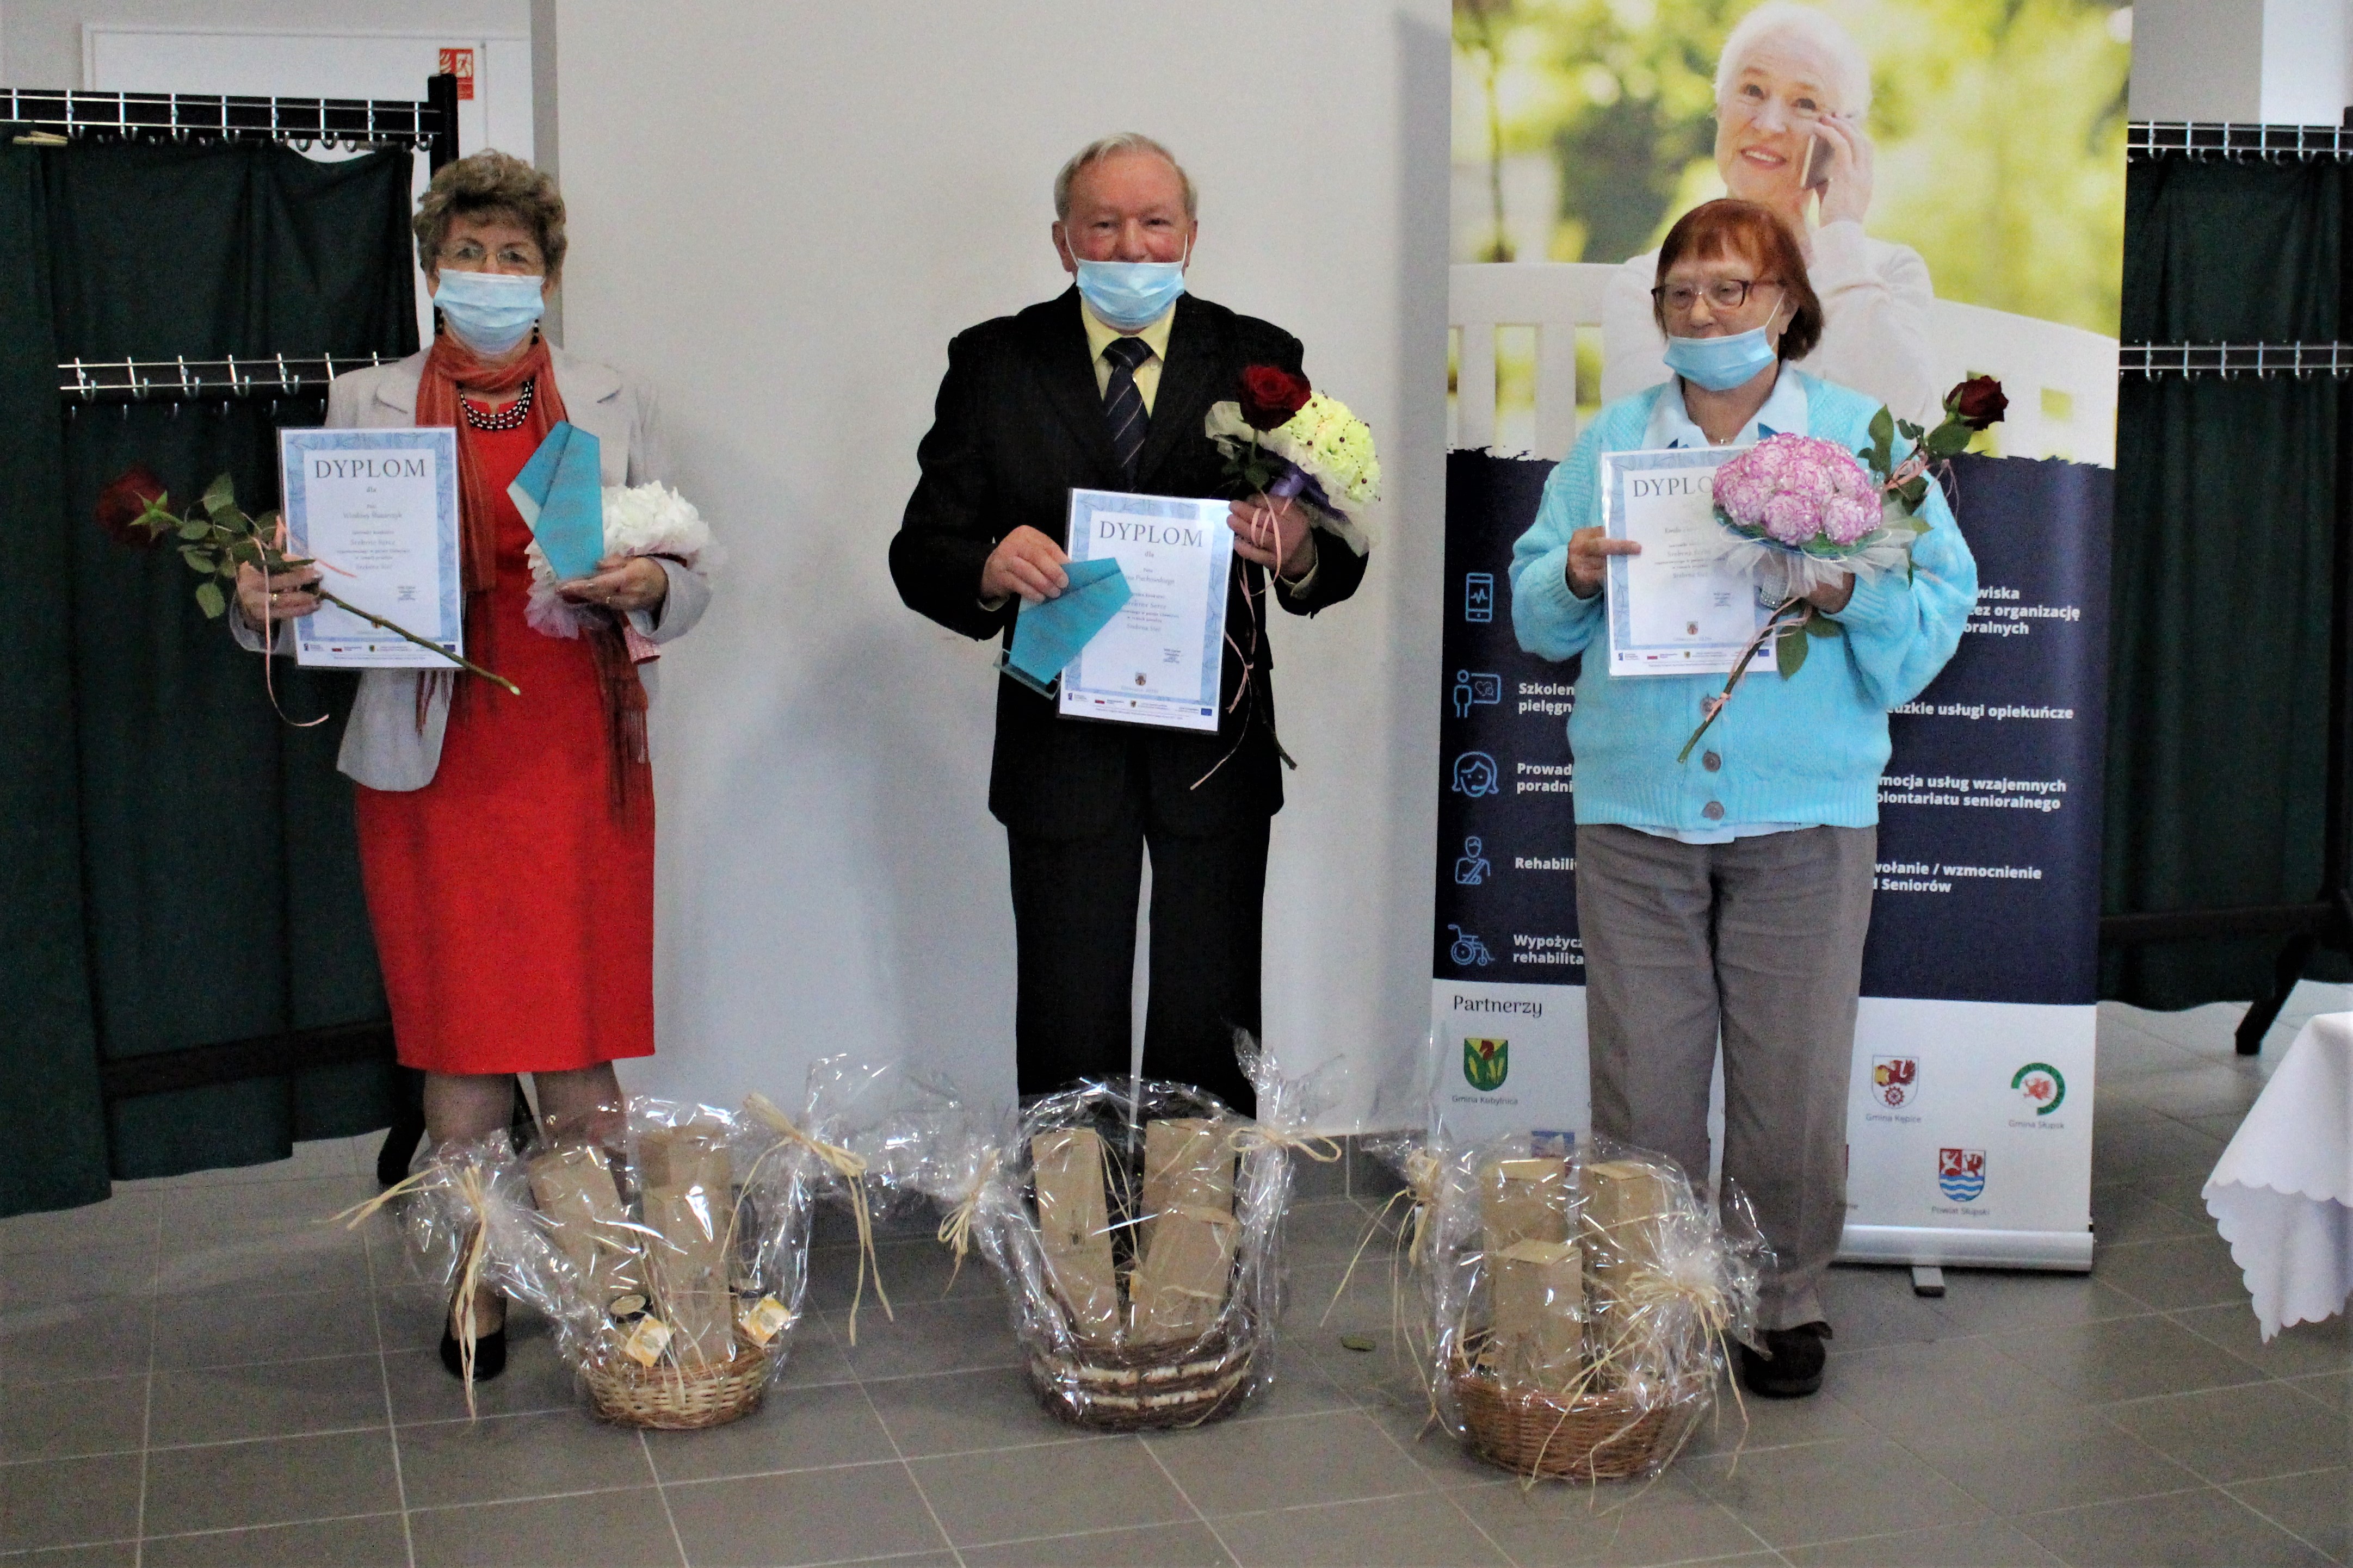 Troje laureatów z dyplomami, bukietami kwiatów i nagrodami